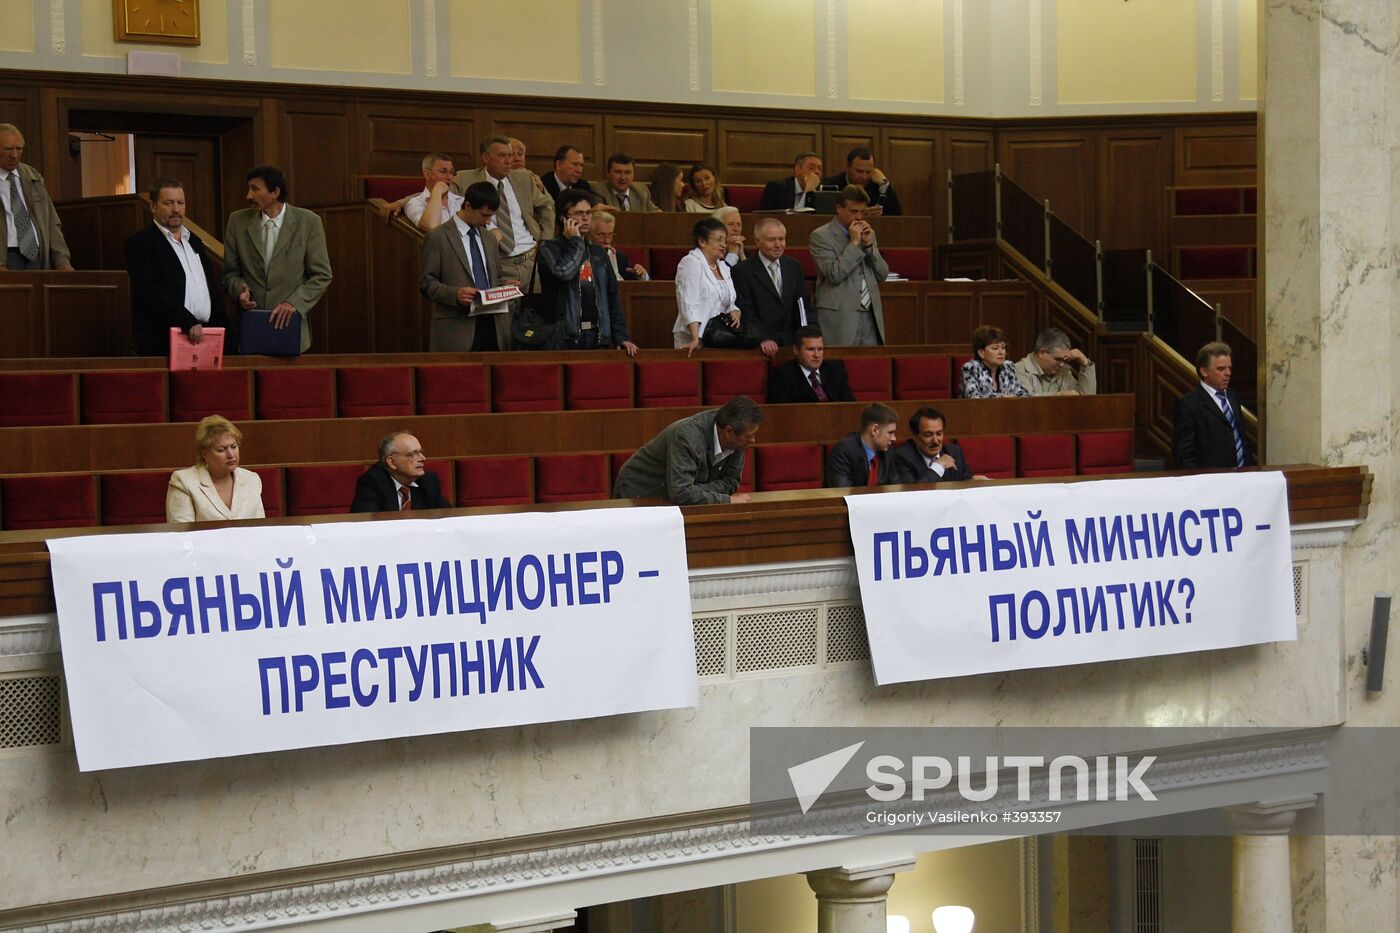 Ukrainian Parliament's session